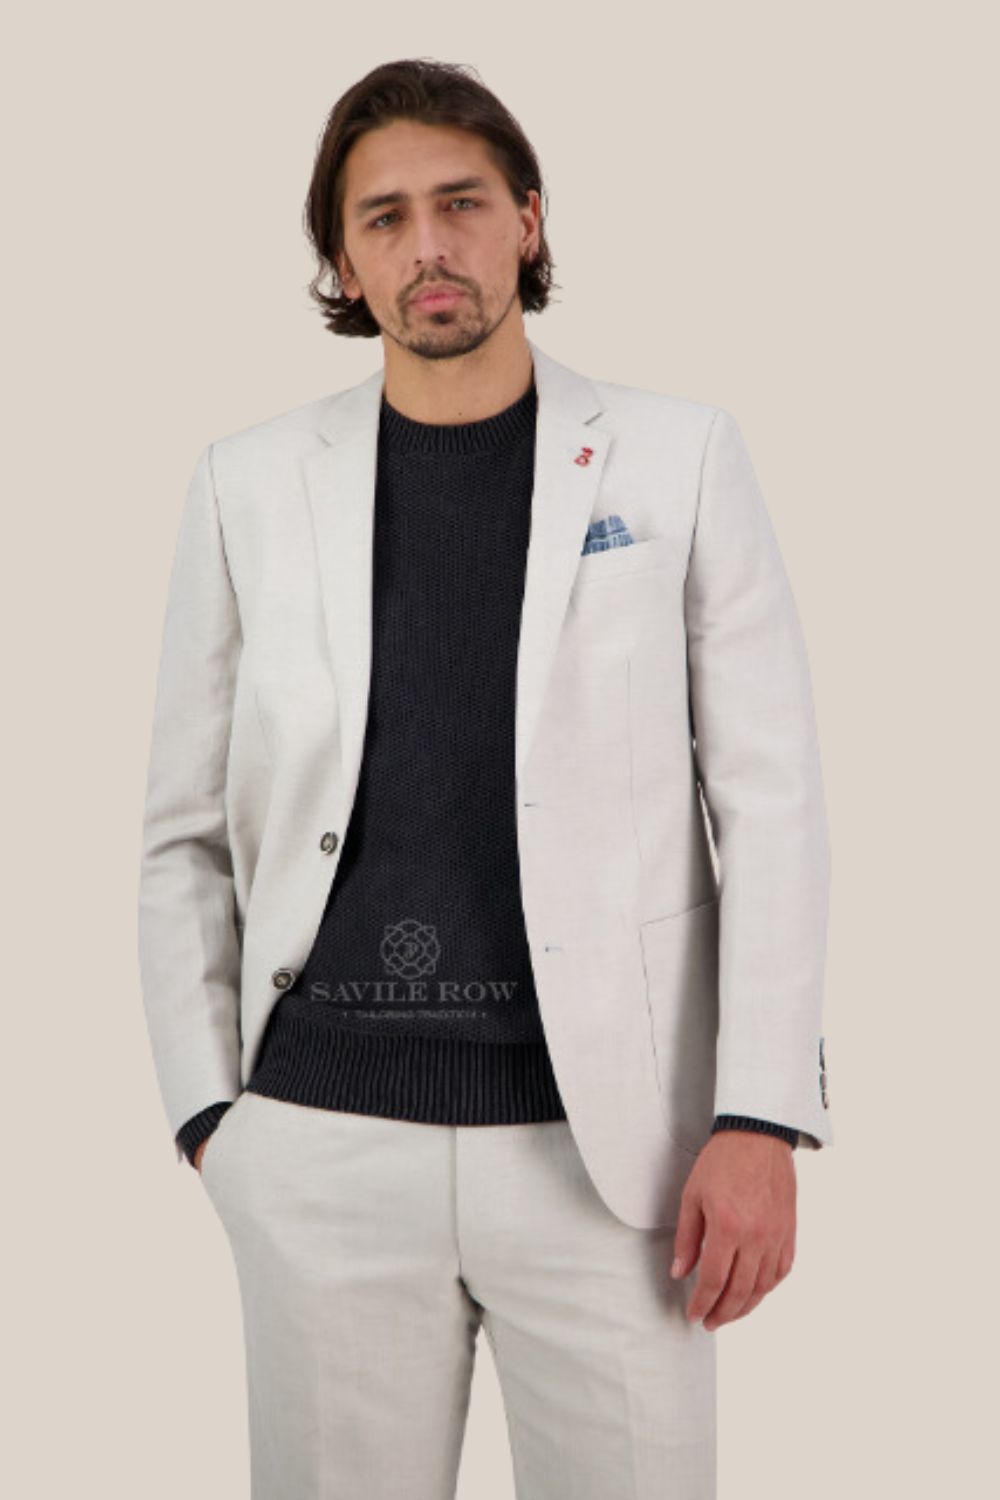 Saville Row Asher Linen Jacket - SL3